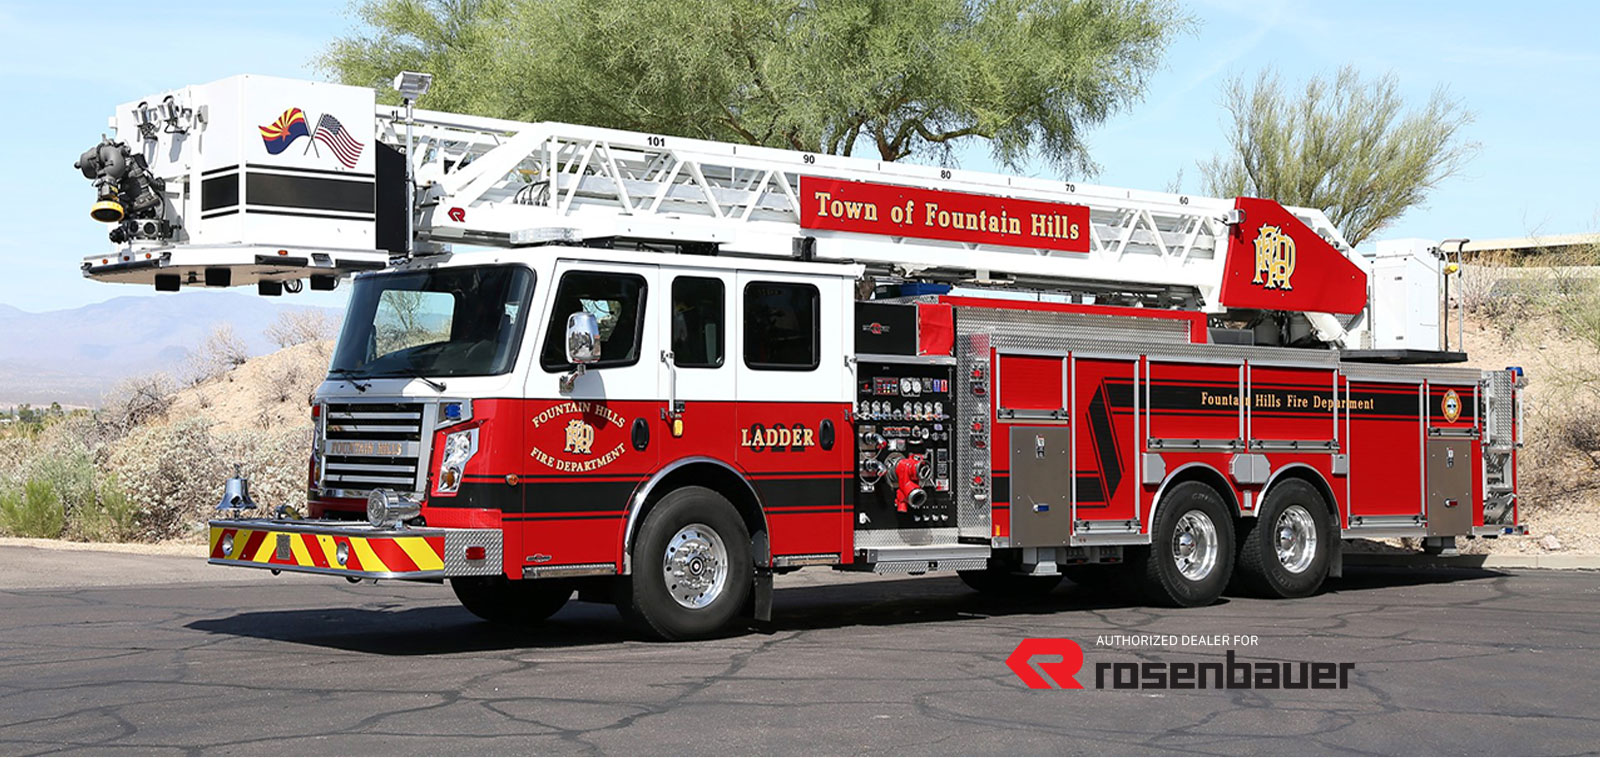 Fire Equipment Experts - Rosenbauer Dealer